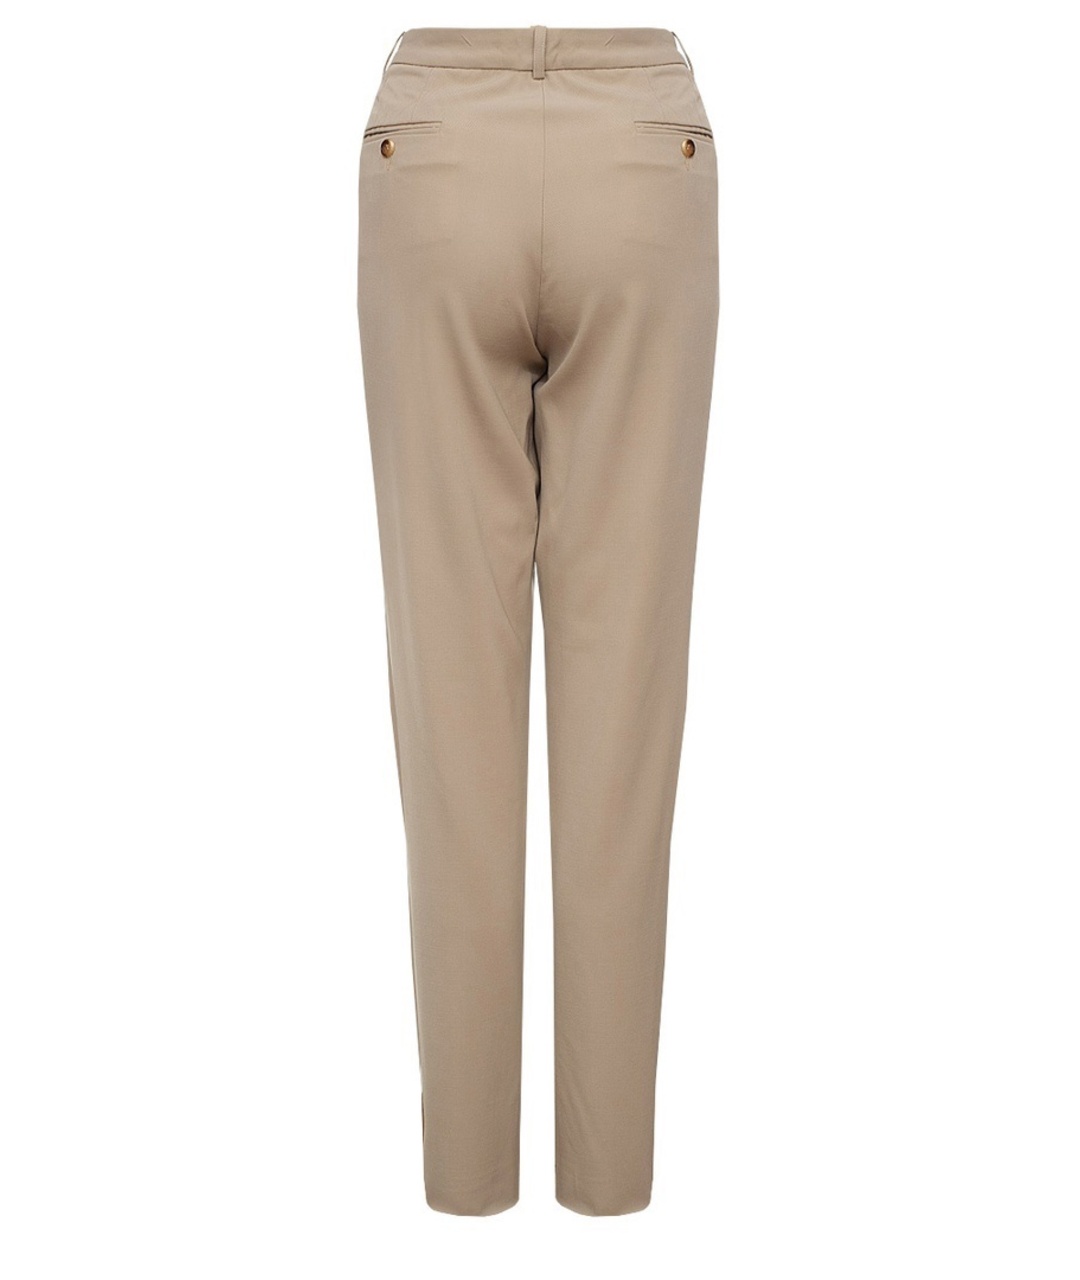 MICHAEL KORS Бежевые шерстяные брюки широкие, фото 2